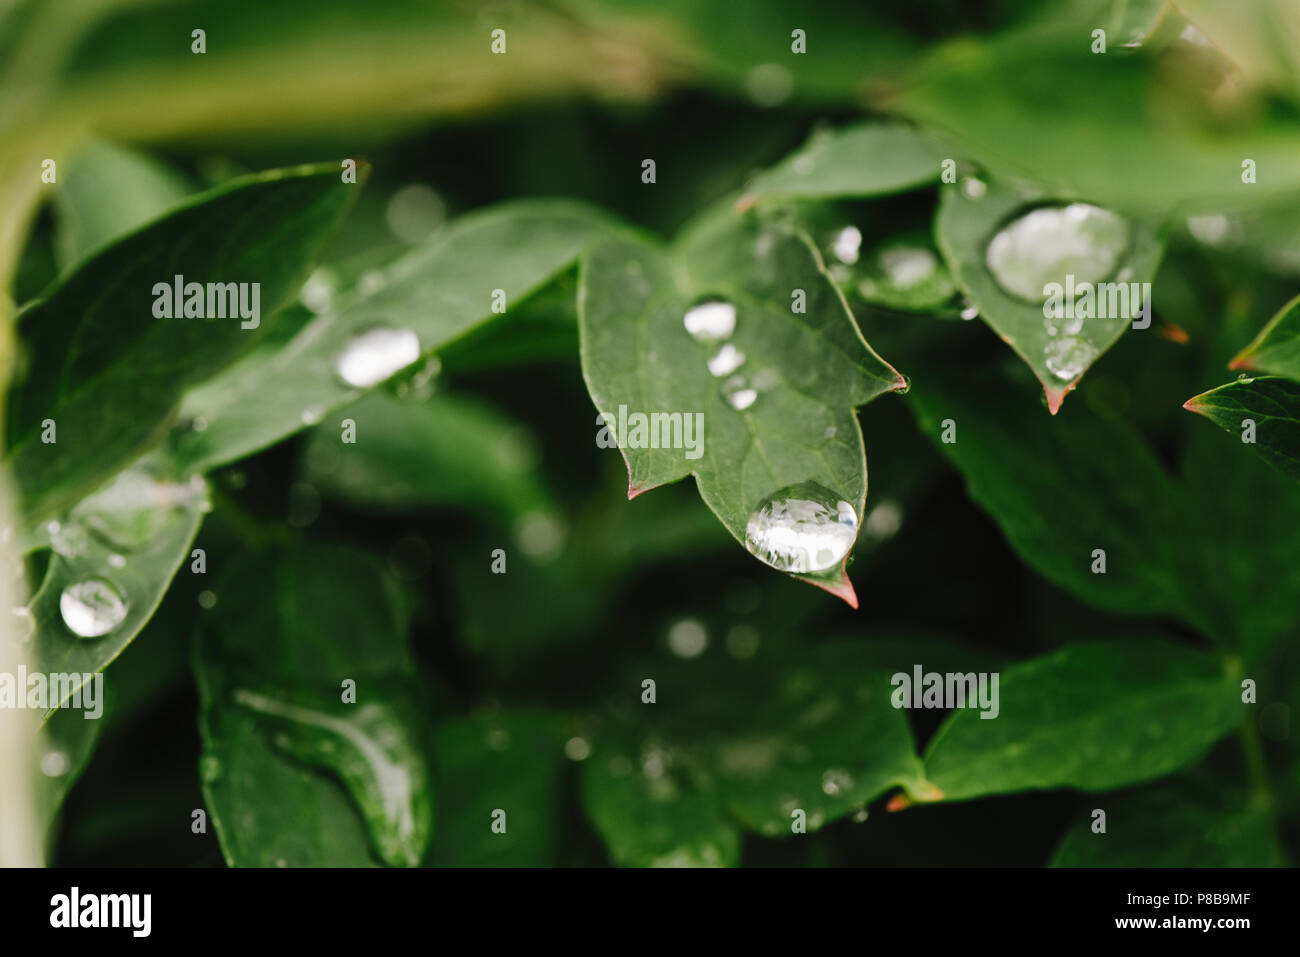 Después de la lluvia, gotas de agua sobre hojas verdes en el jardín, de fondo de la trama de fondo natural para la entrada de texto. Foto de stock